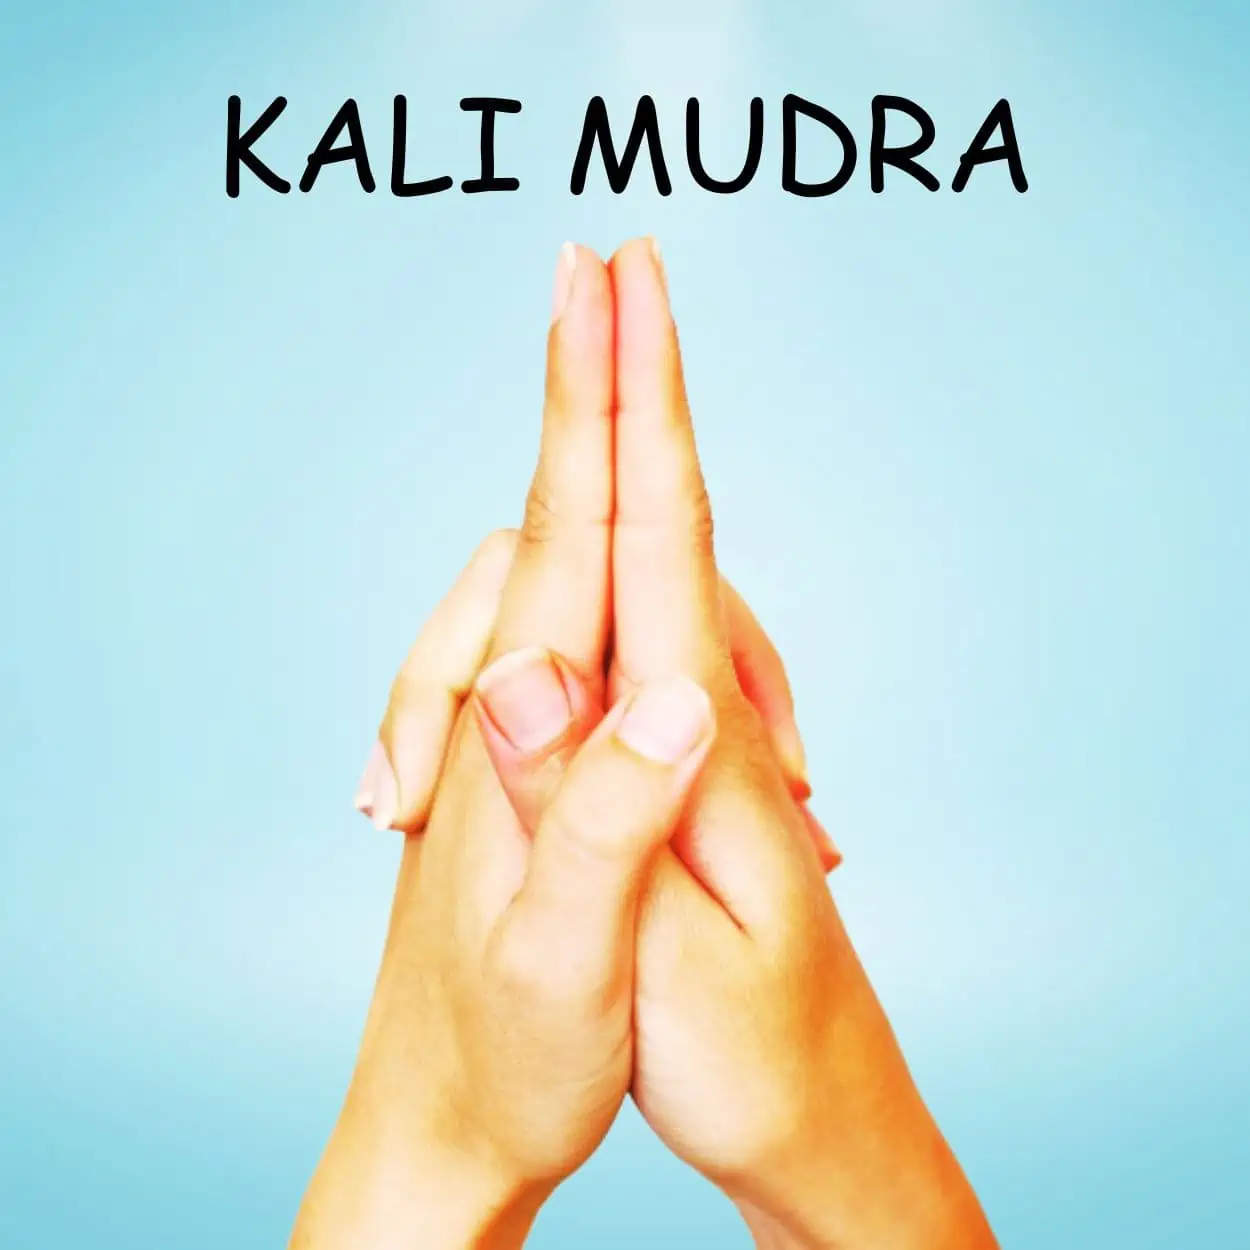 Kali Mudra